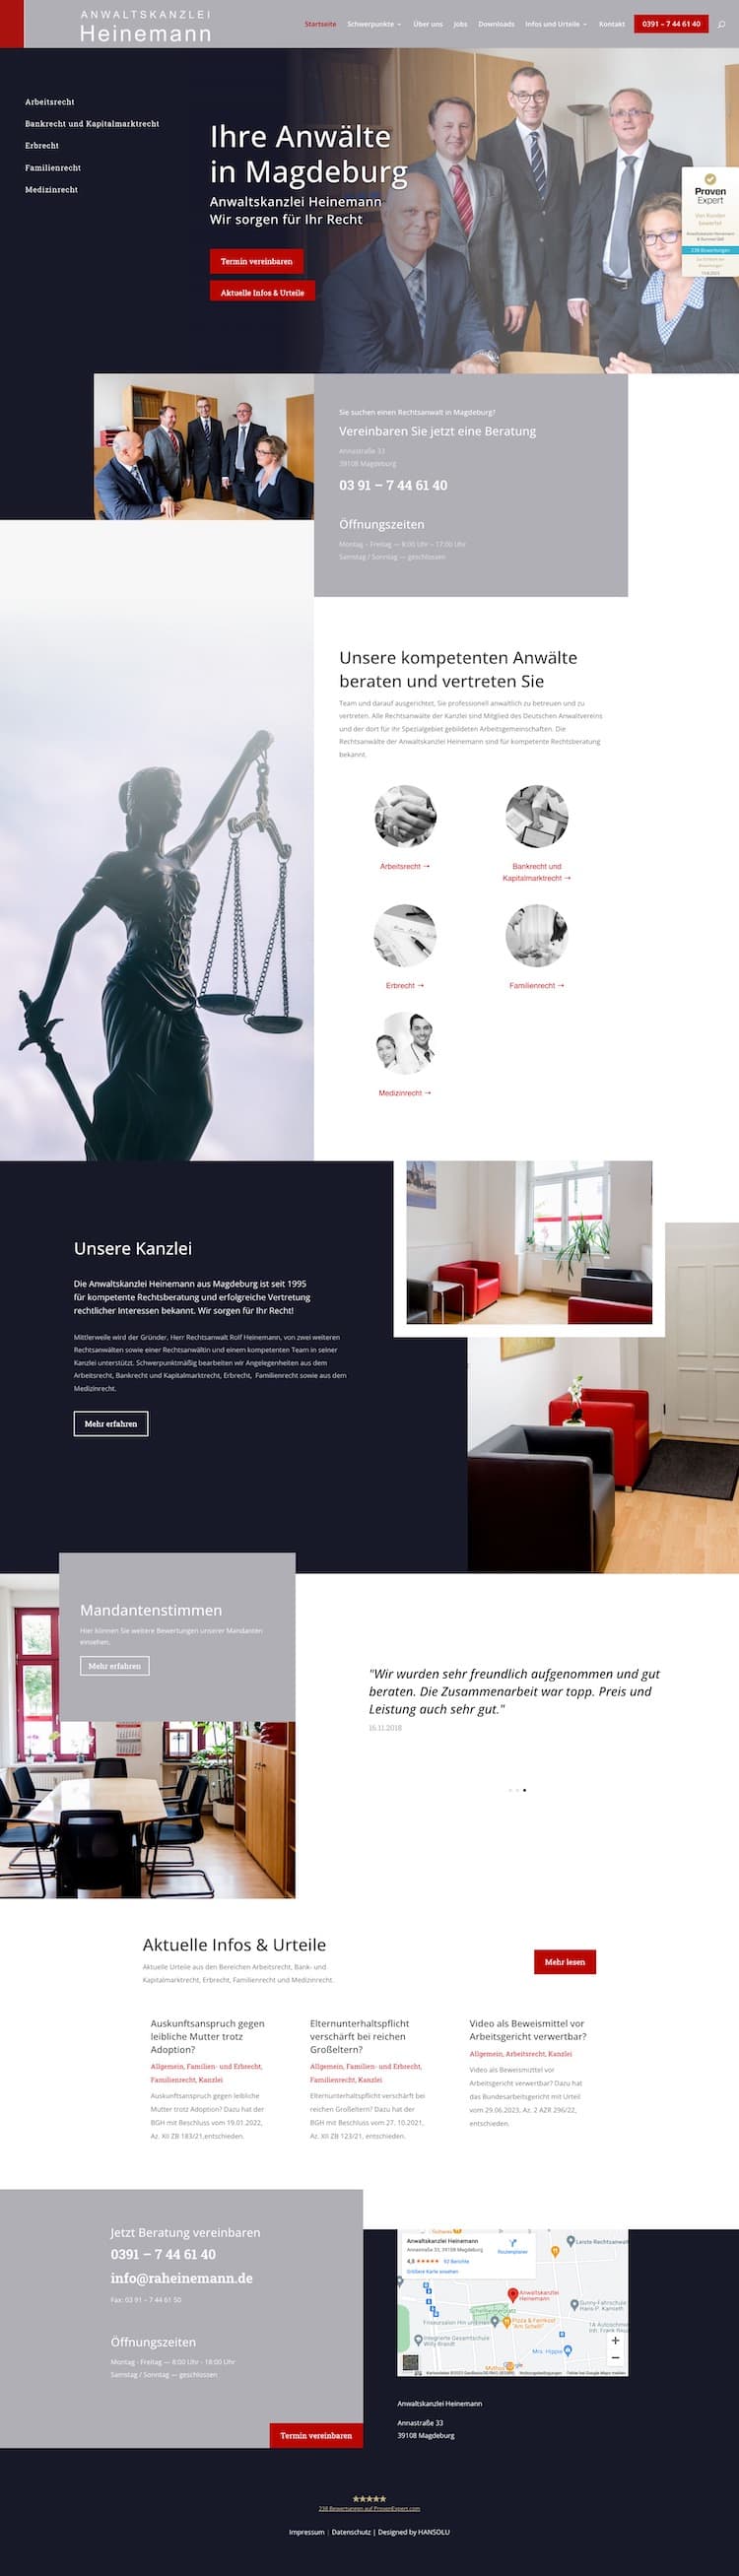 Webdesign für Anwälte - Anwaltskanzlei Heinemann